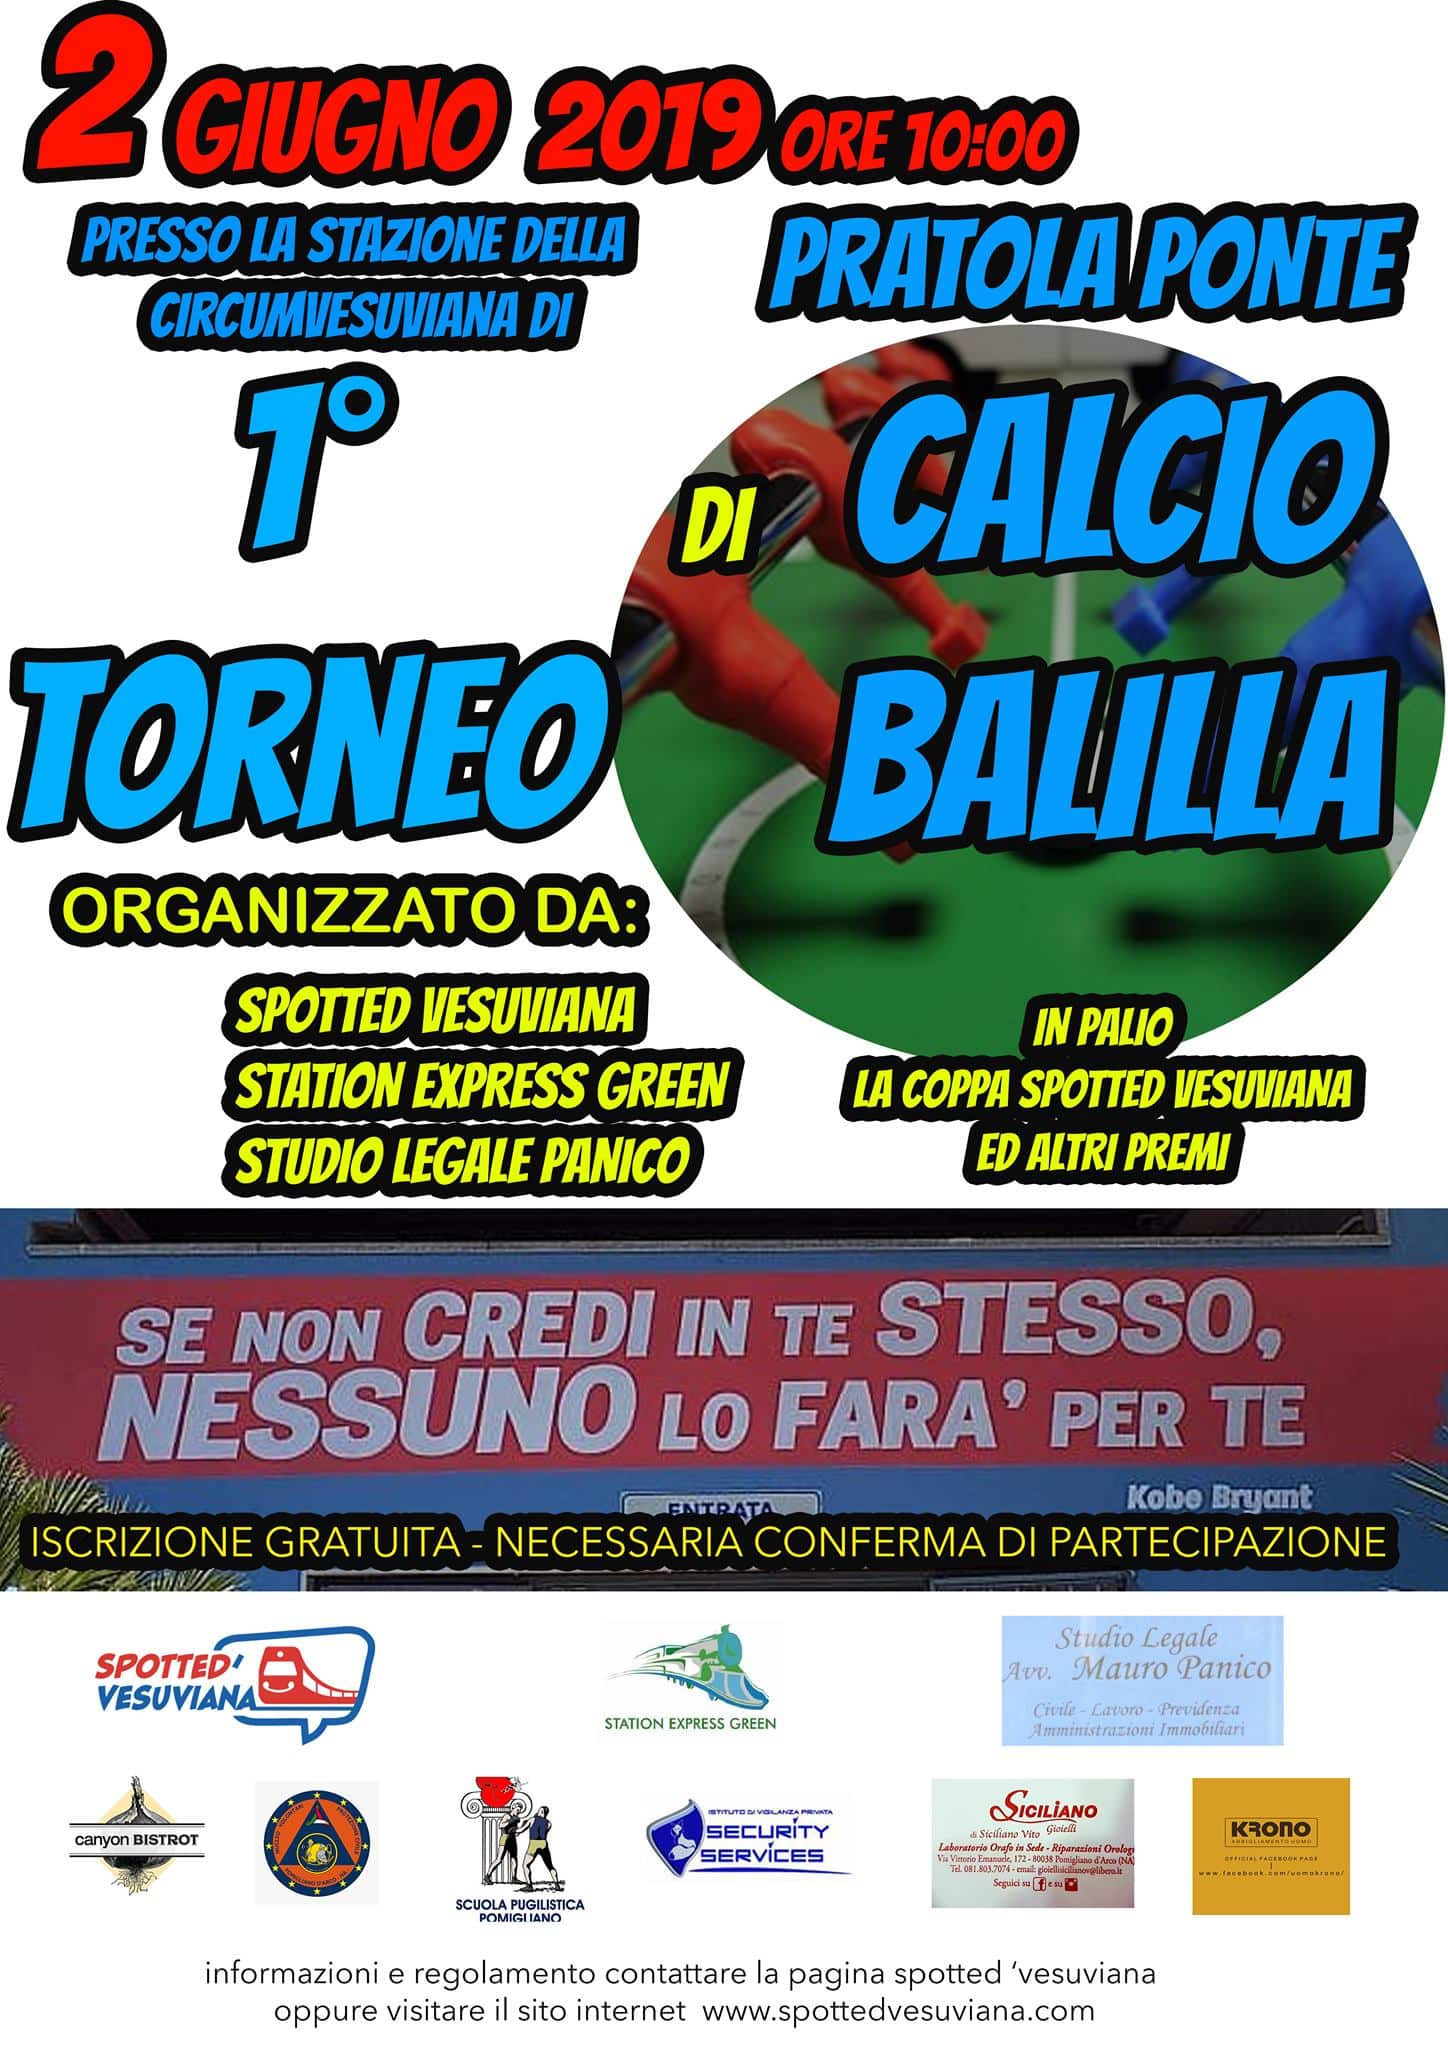 Trofeo Calcio Balilla – Prima edizione